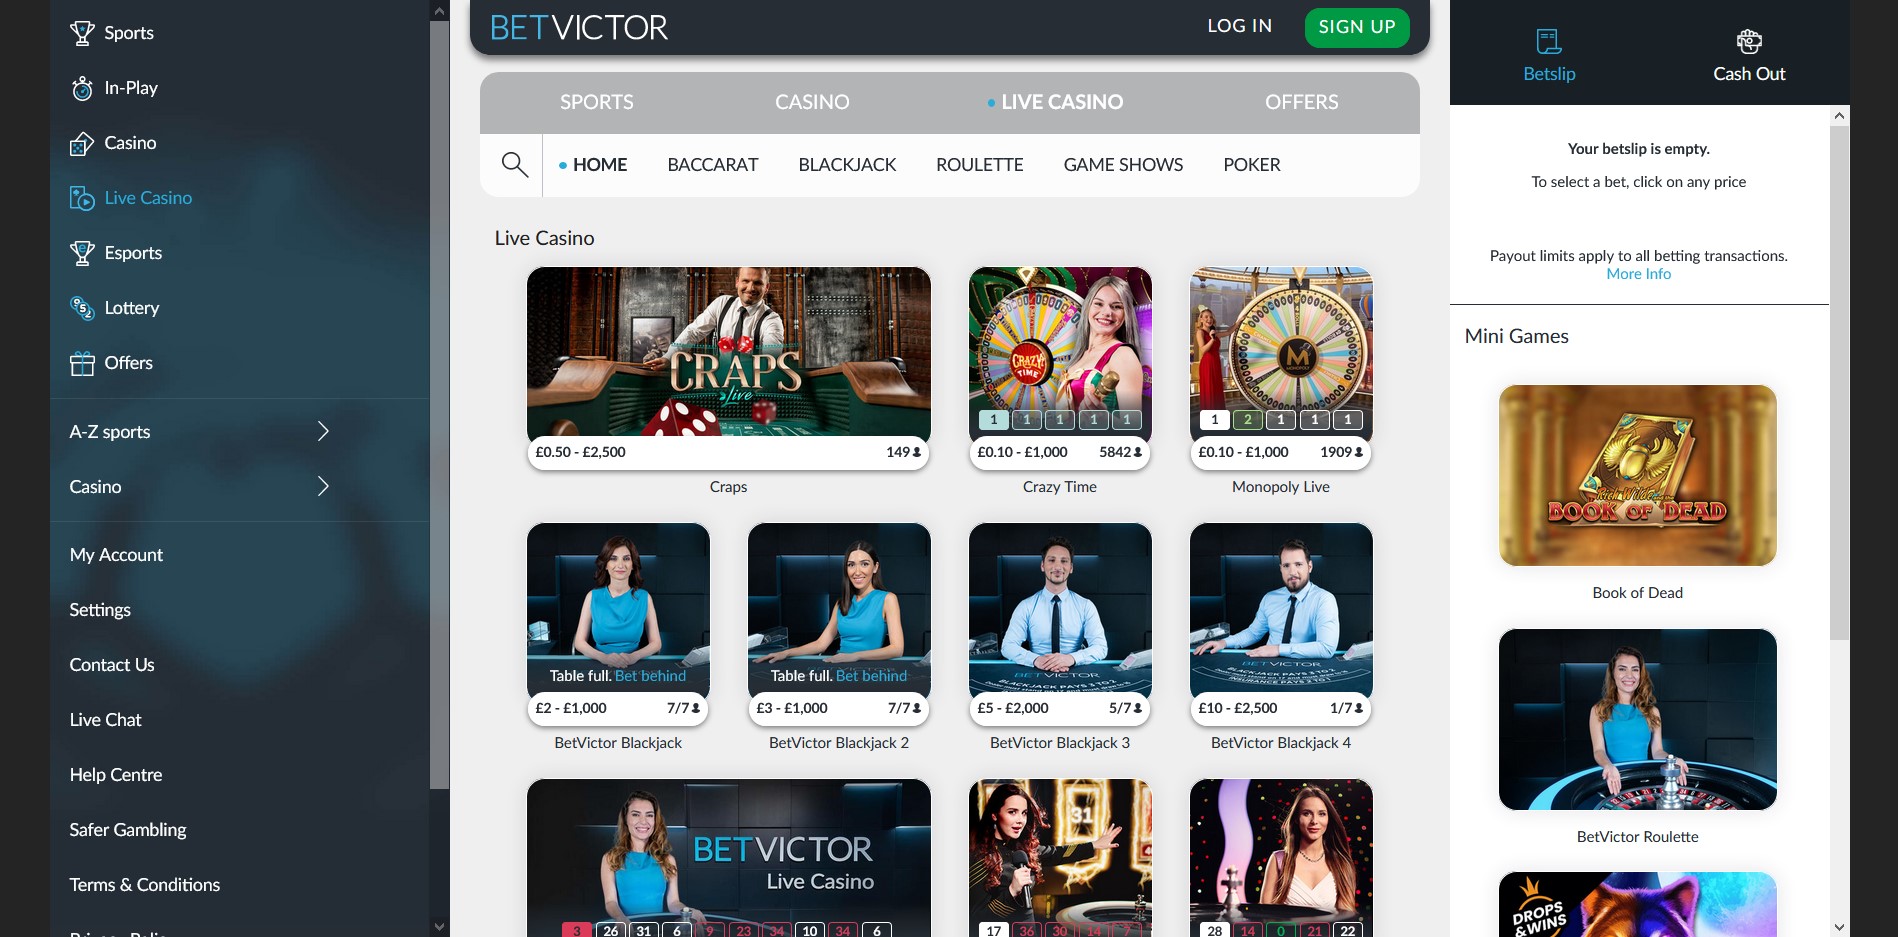 Bet Victor Casino Live Dealer Games